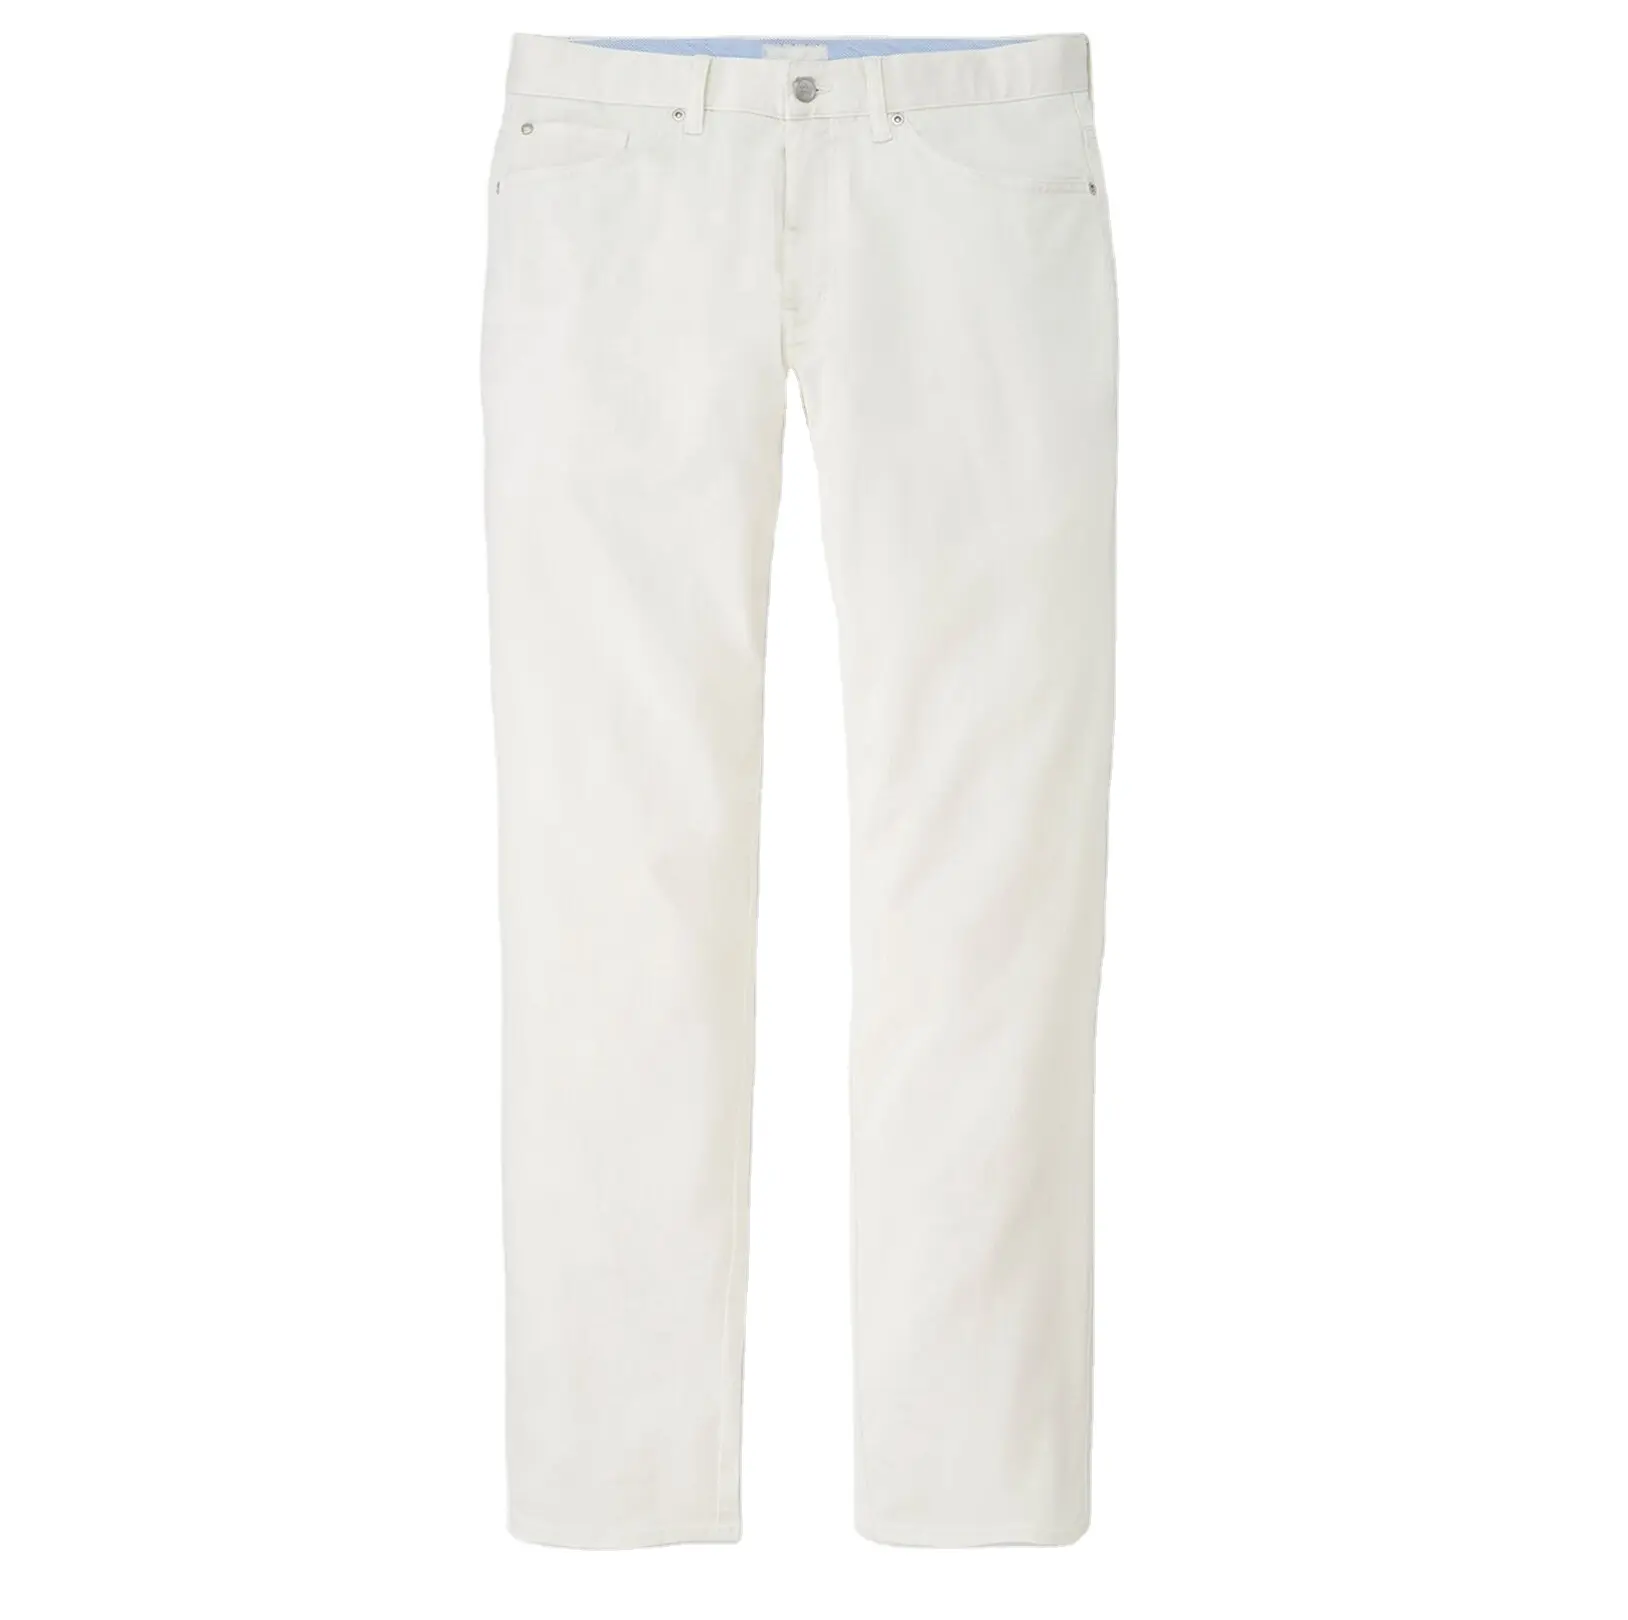 Premium kalite moda sıska Scratchy Denim jean erkekler pantolon tasarımcı giyim erkek kot pantolon erkekler yeni moda beyaz boyalı